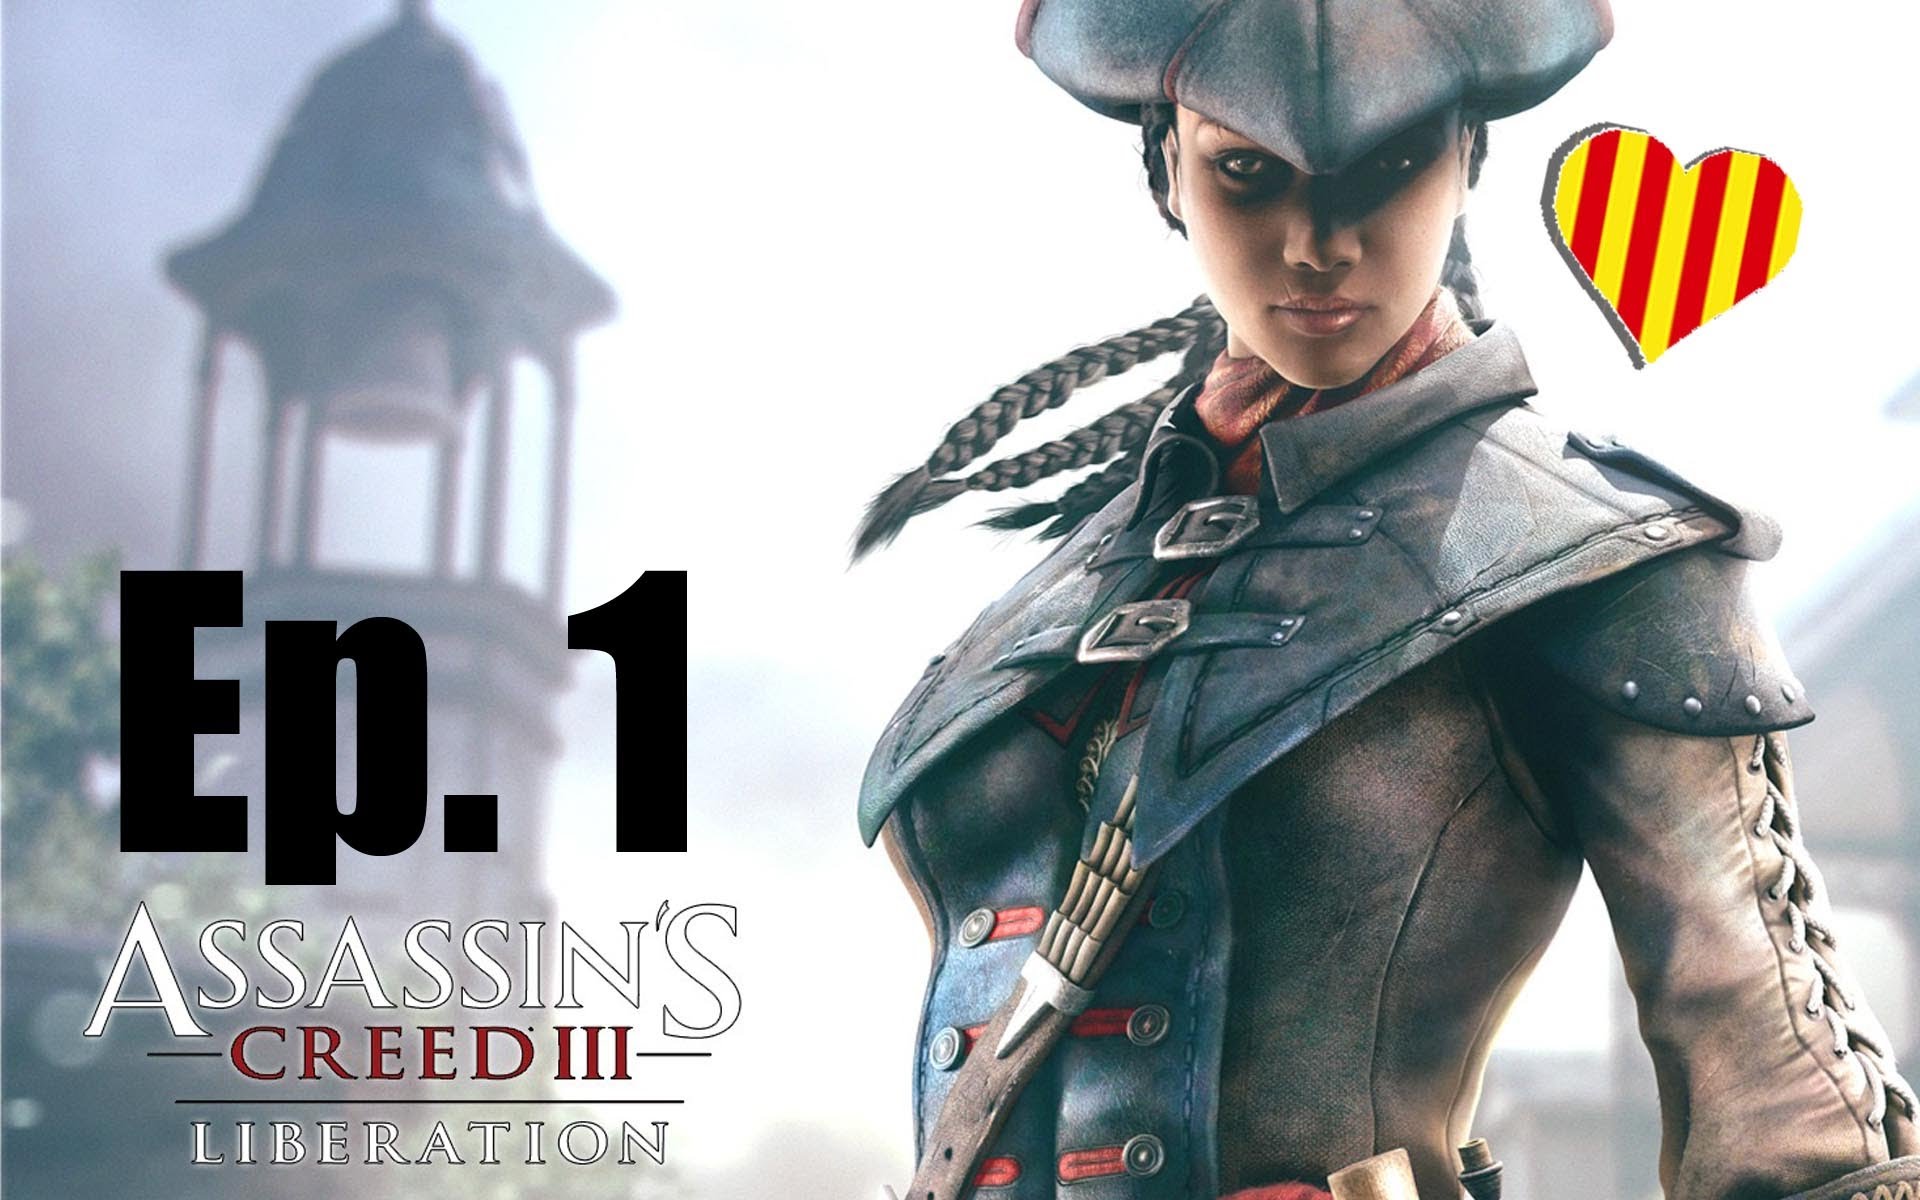 Assassin's Creed III Liberation Gameplay Ep.1 Racisme per tot arreu de Albert Lloreta